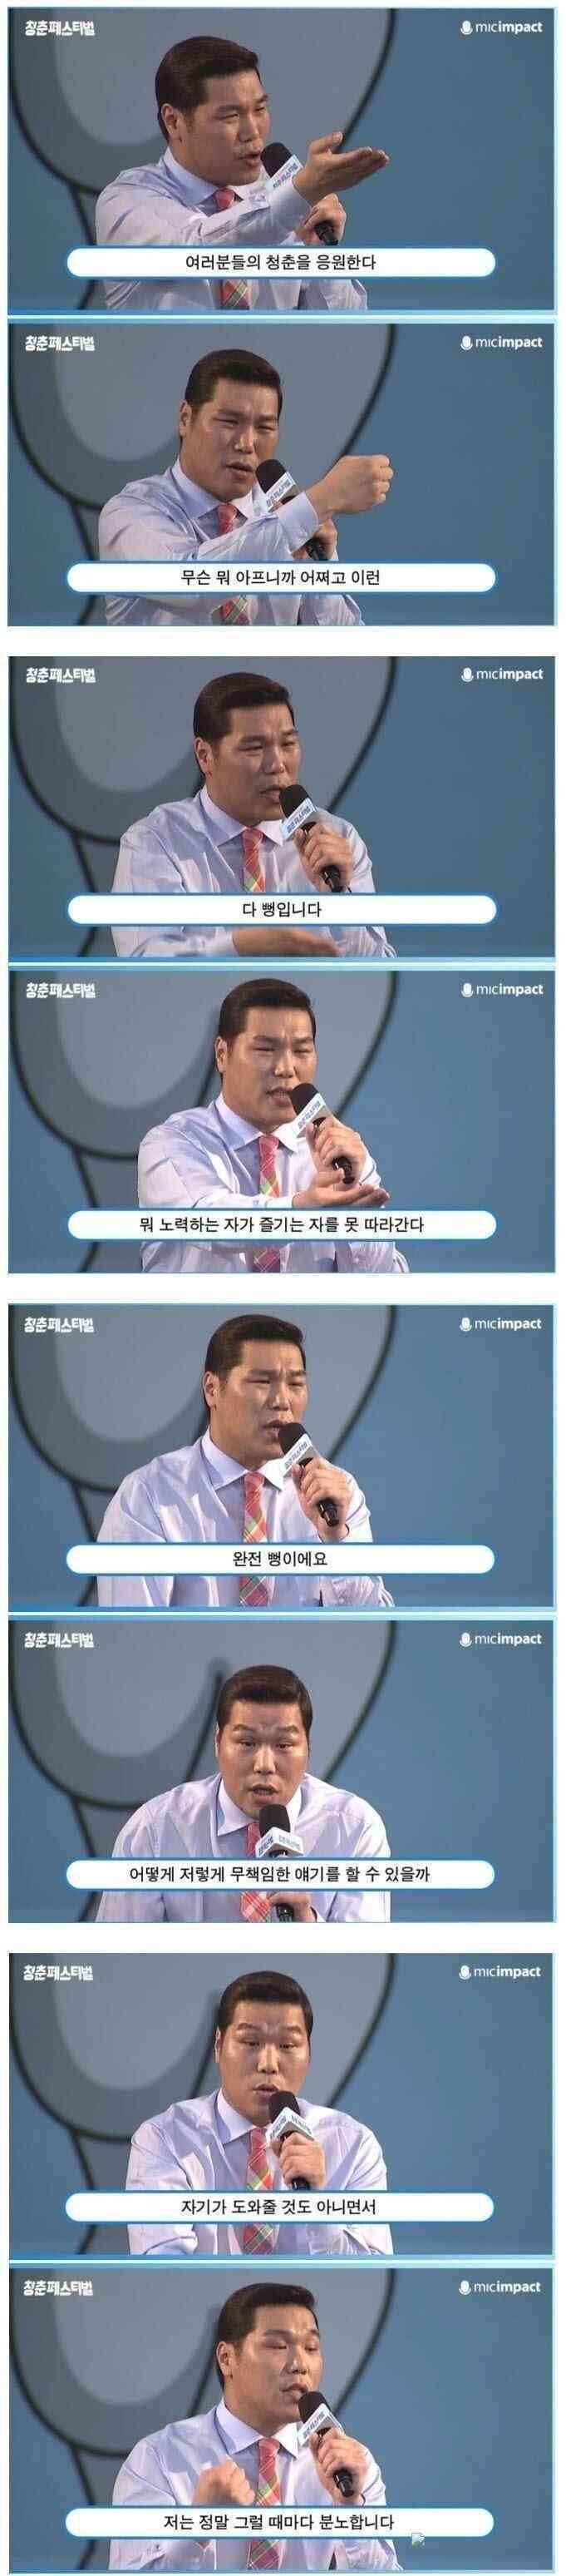 김제동과 서장훈의 강연 차이 ㄷㄷ.jpg